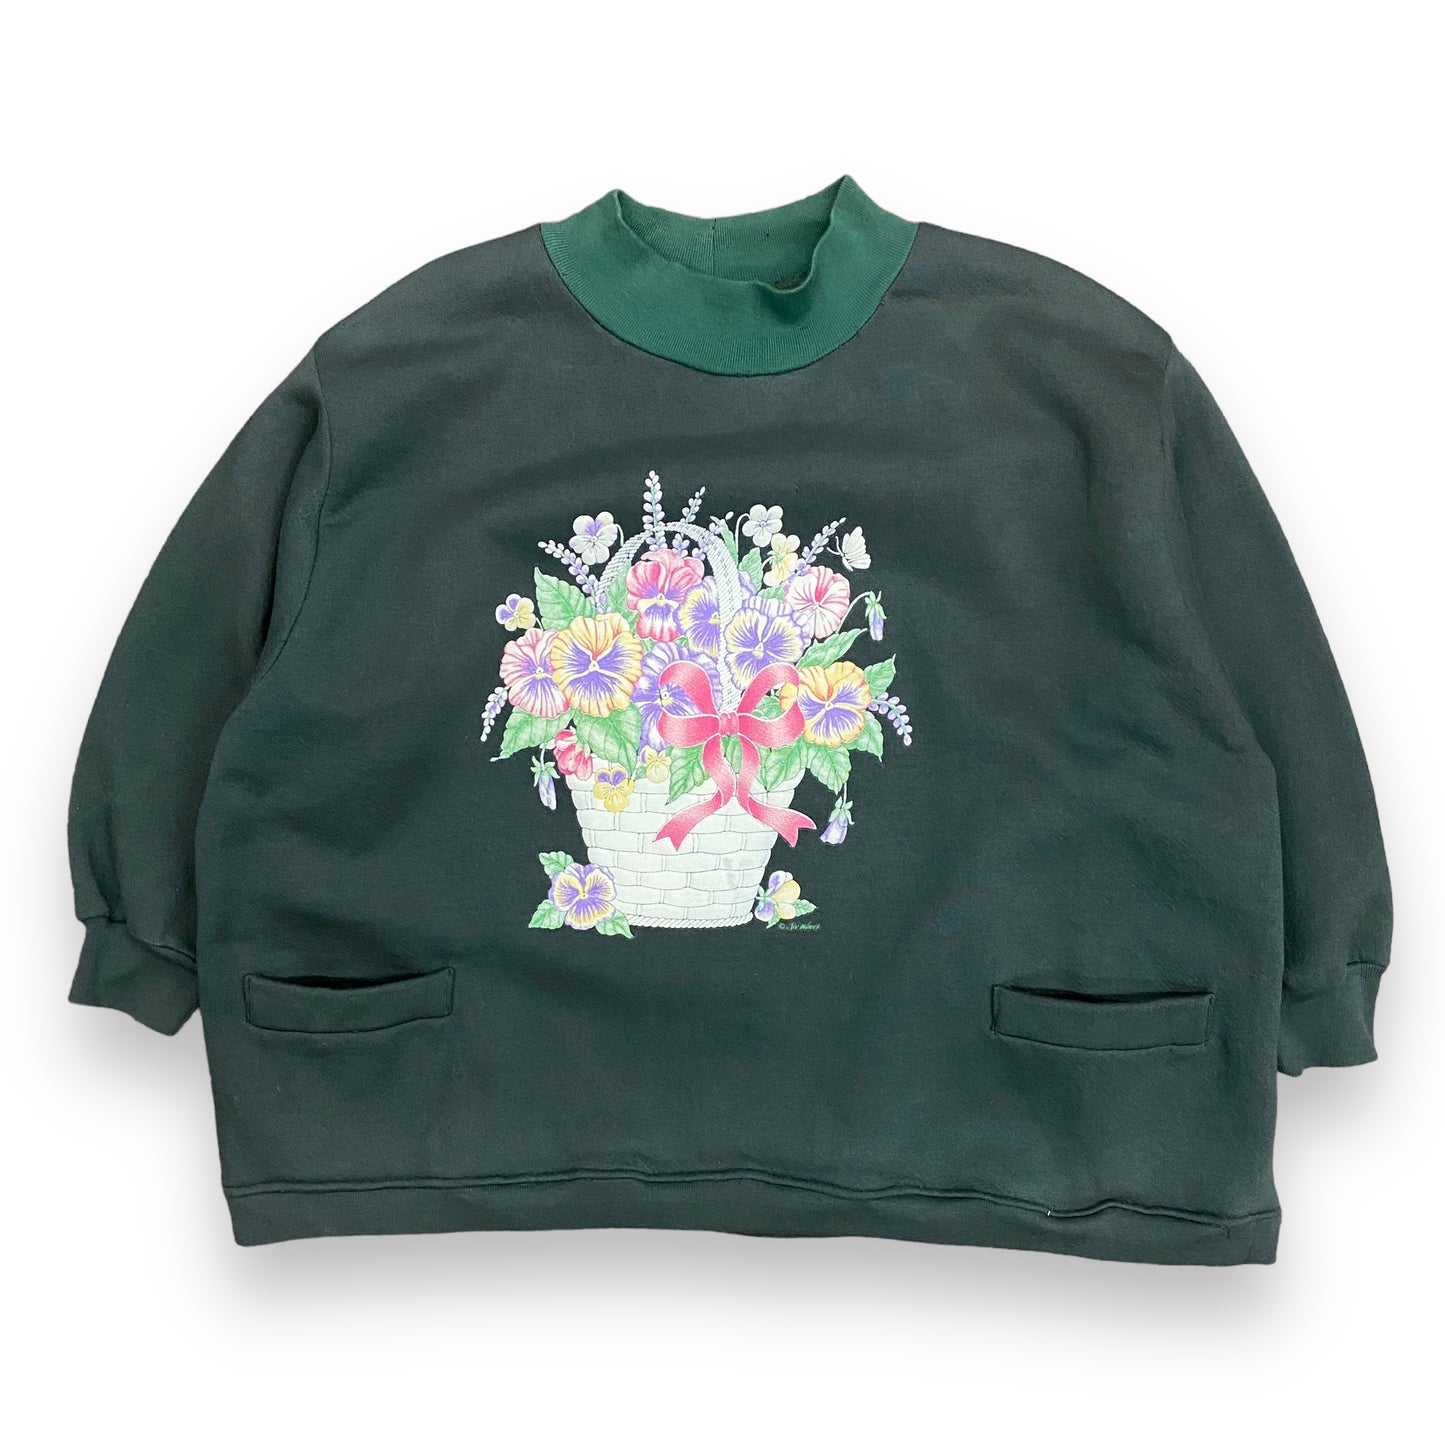 Vintage Cropped Floral Forest Green Mock Neck Sweatshirt - Size Large